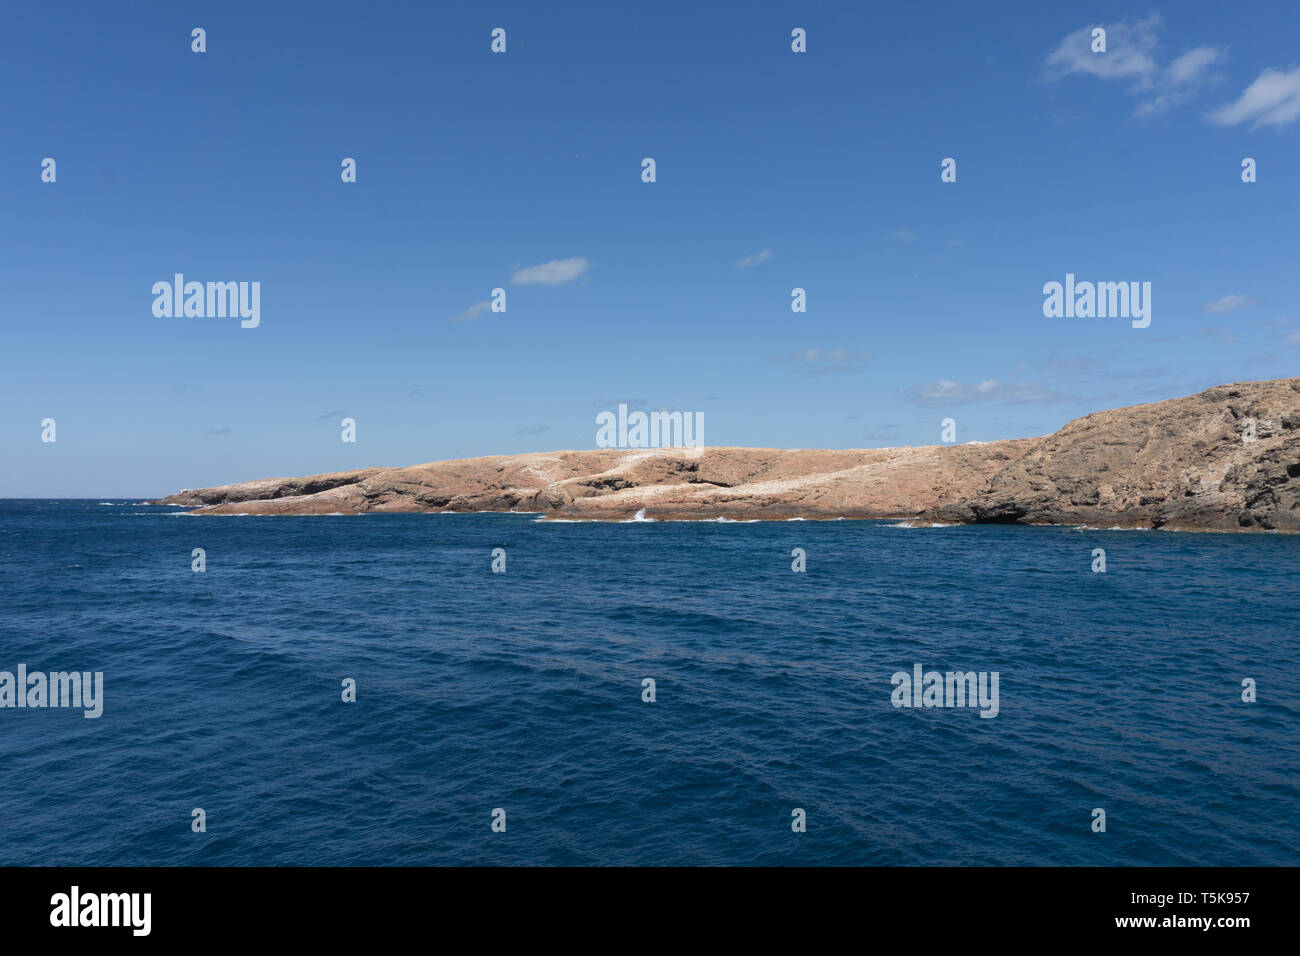 Hallaniyat Islands, Oman Stock Photo